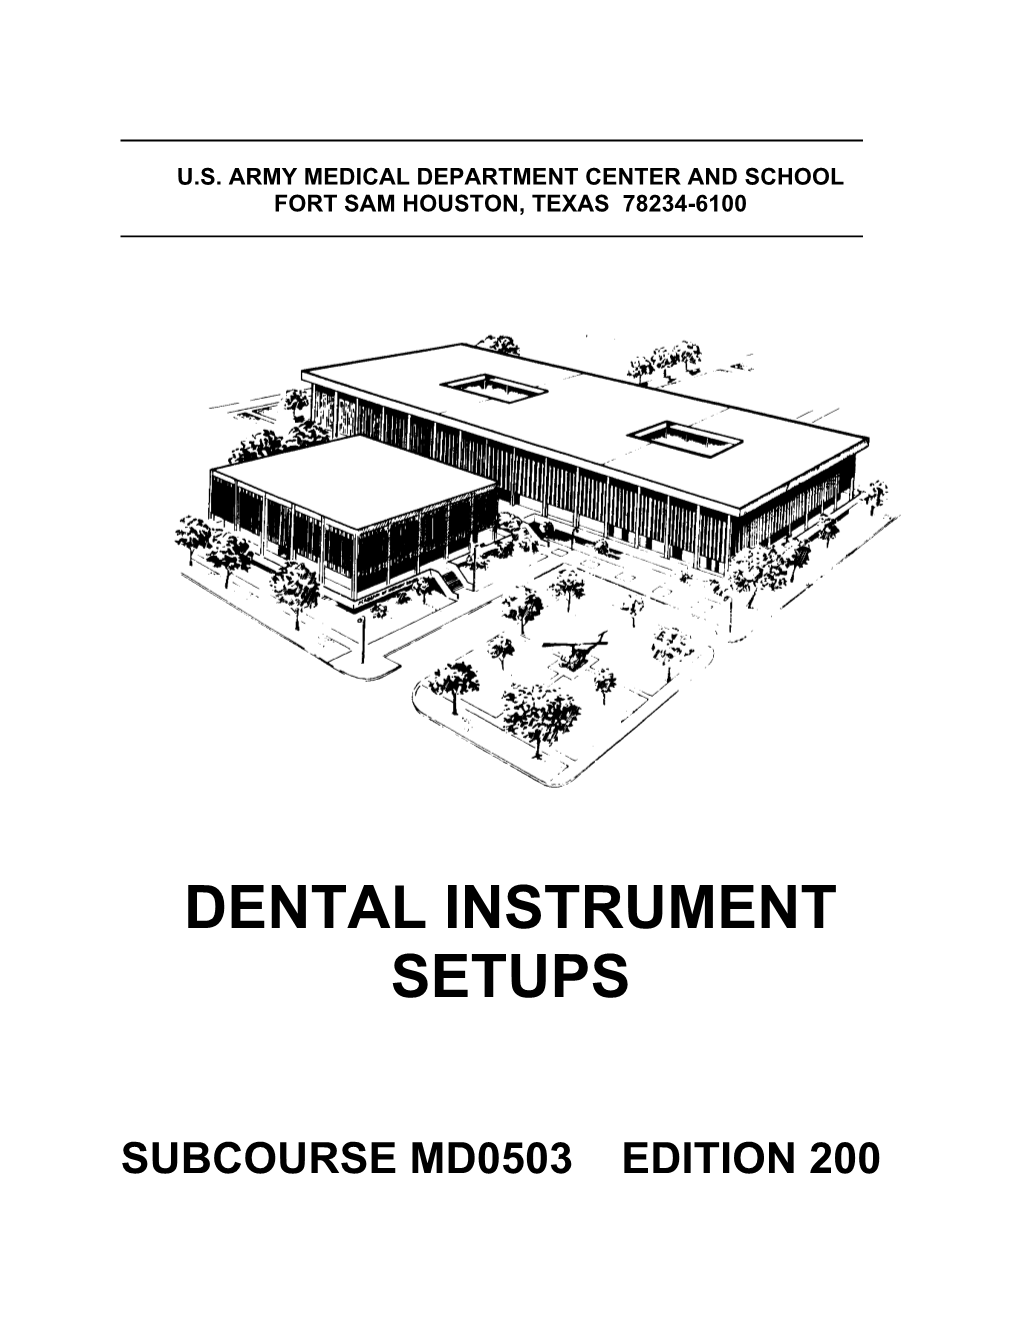 Dental Instrument Setups